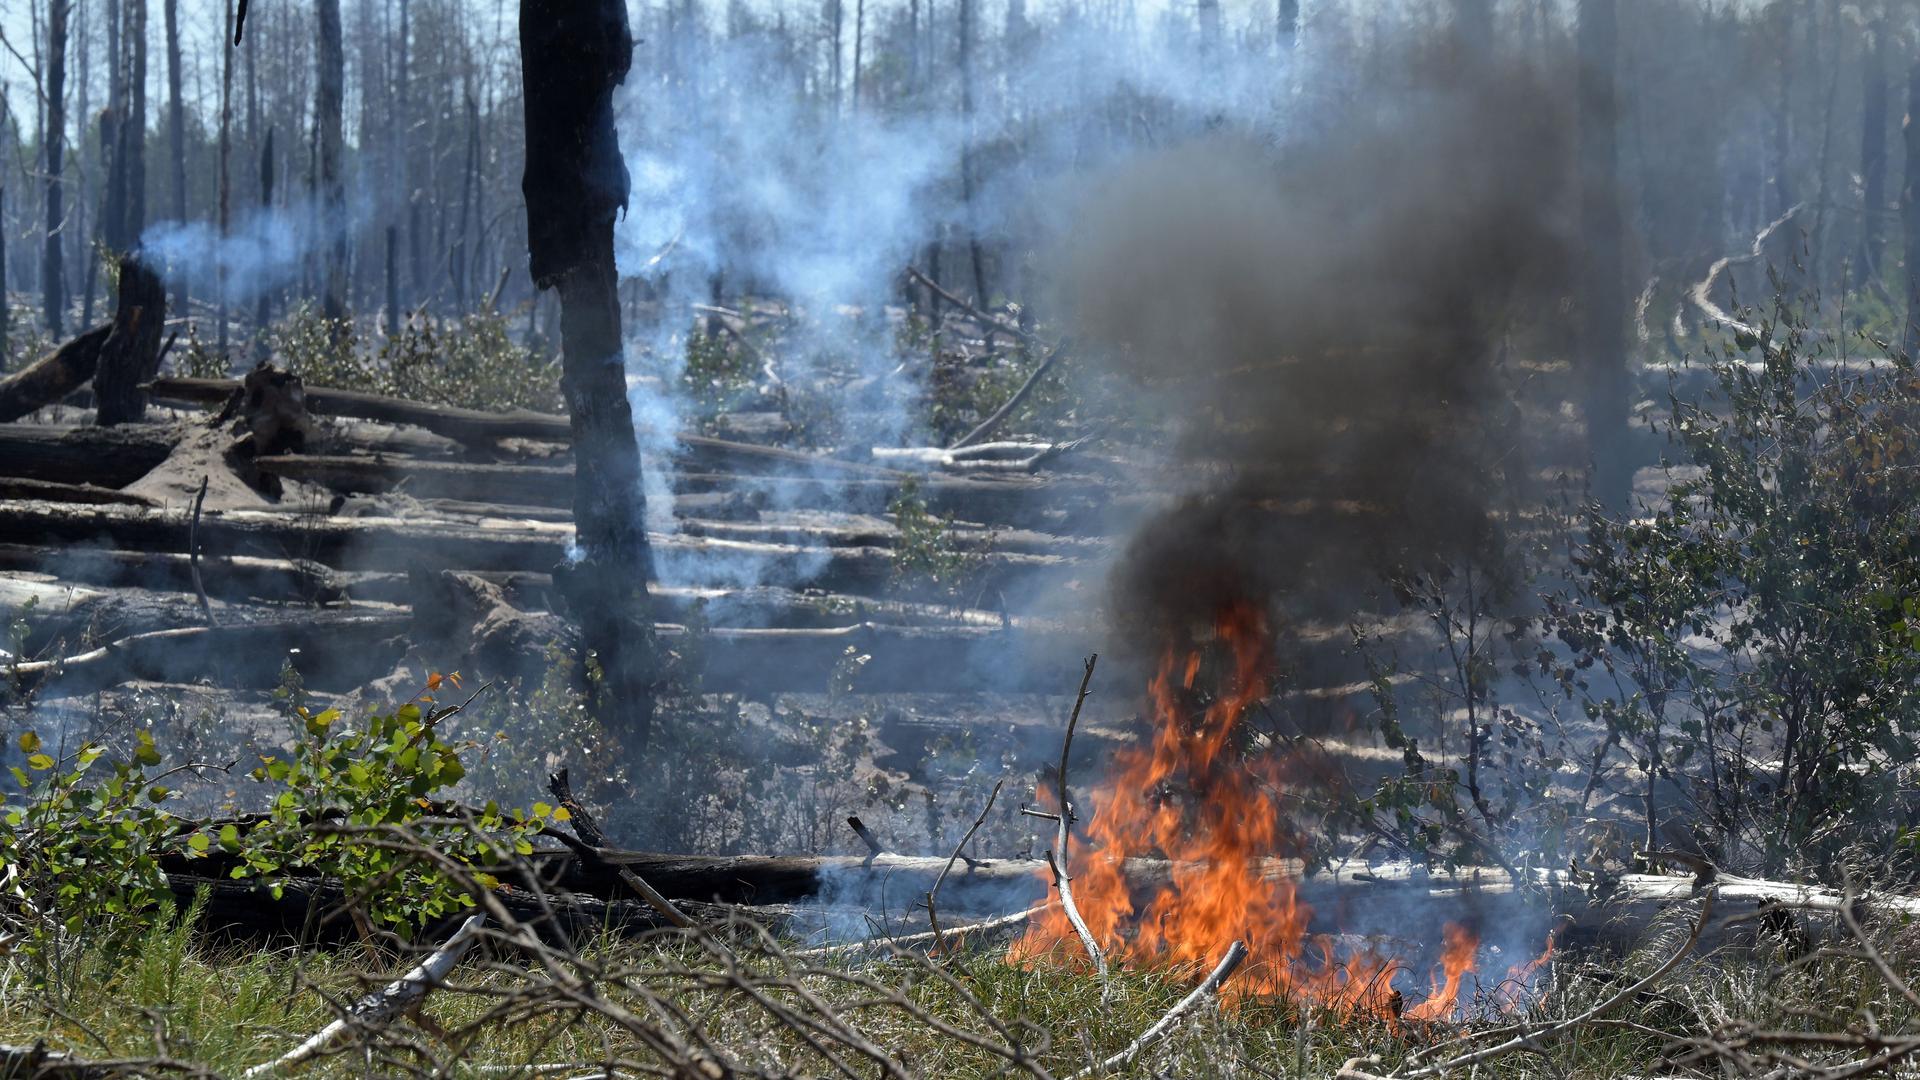 Waldbrand - Feuer bei Jüterbog größer geworden - Drohne wird eingesetzt